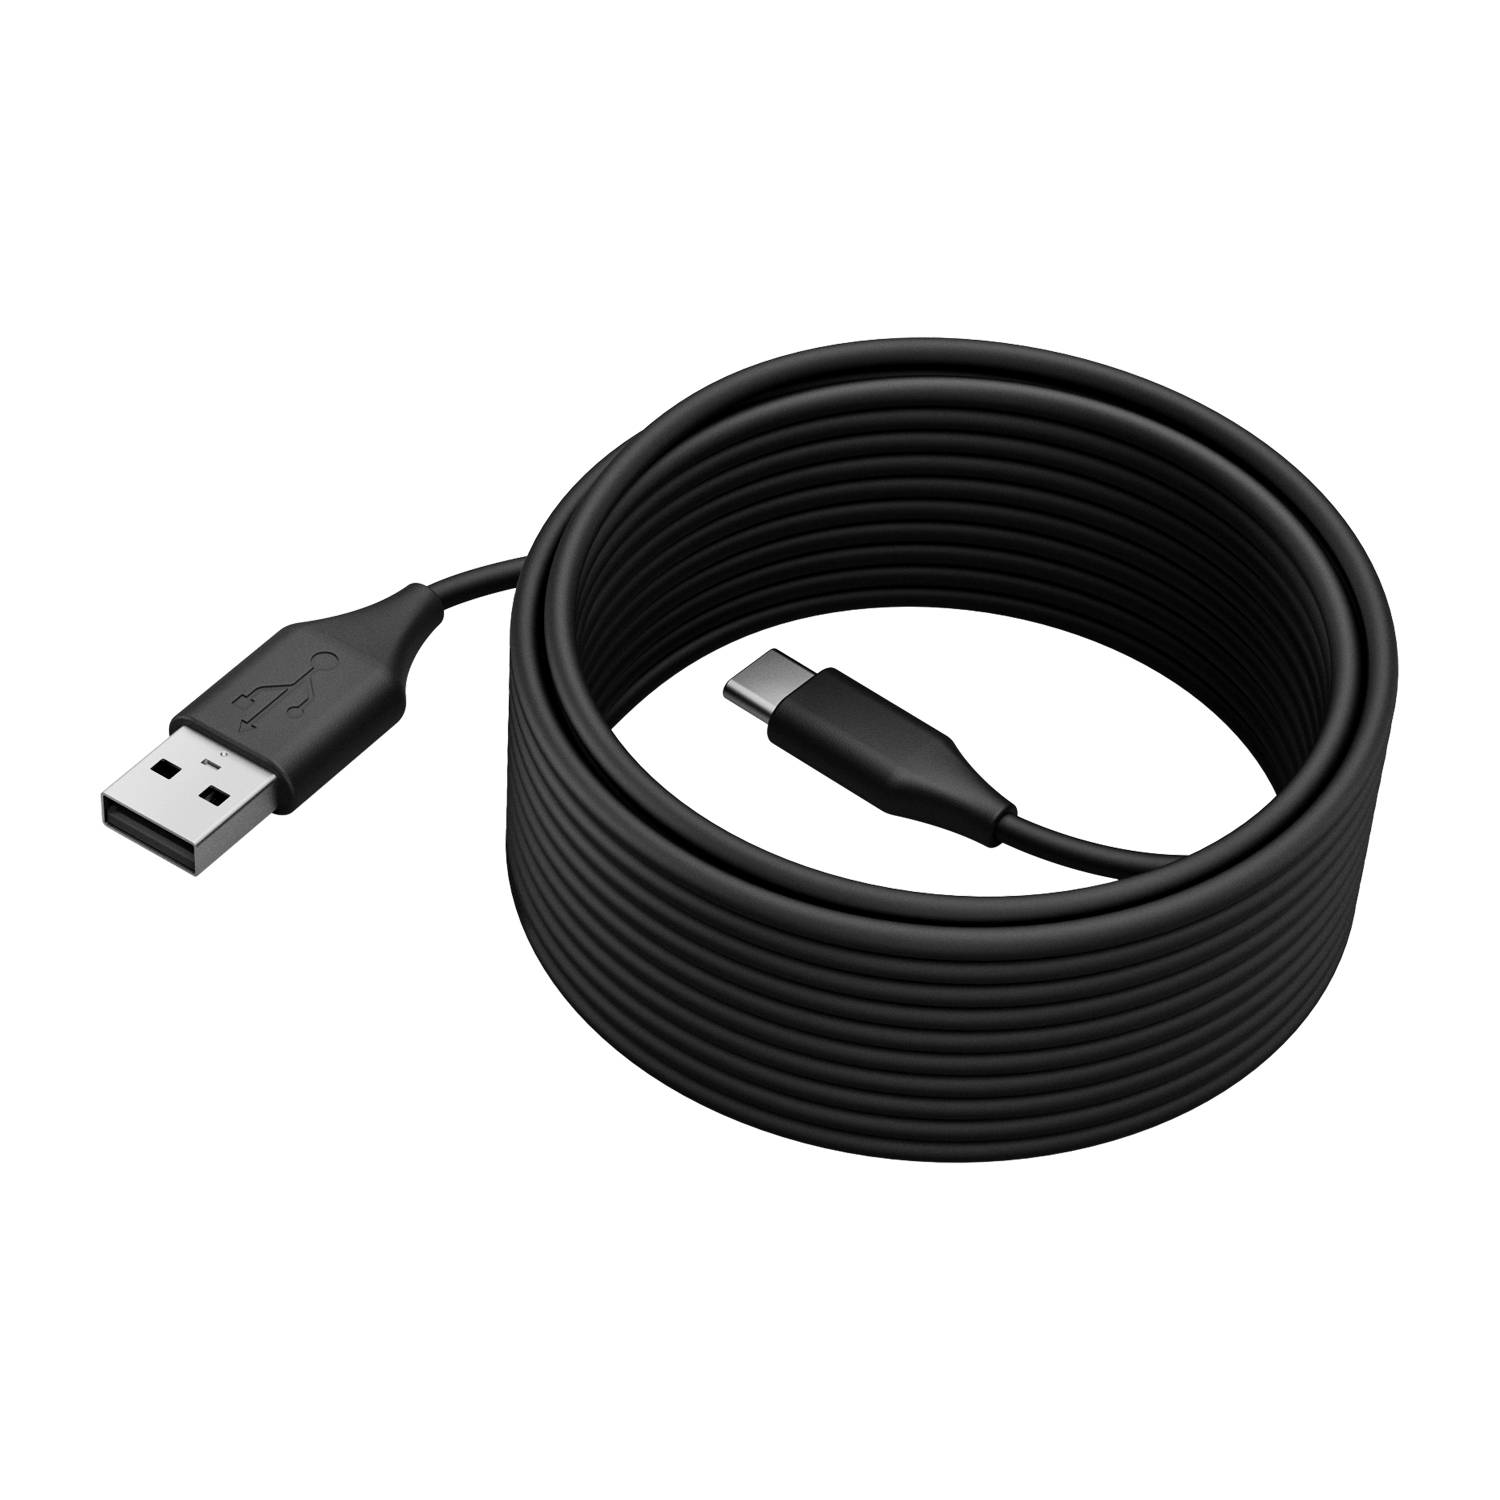 Rca Informatique - image du produit : JABRA PANACAST 50 USB CABLE USB 2.0 5M USB-C TO USB-A